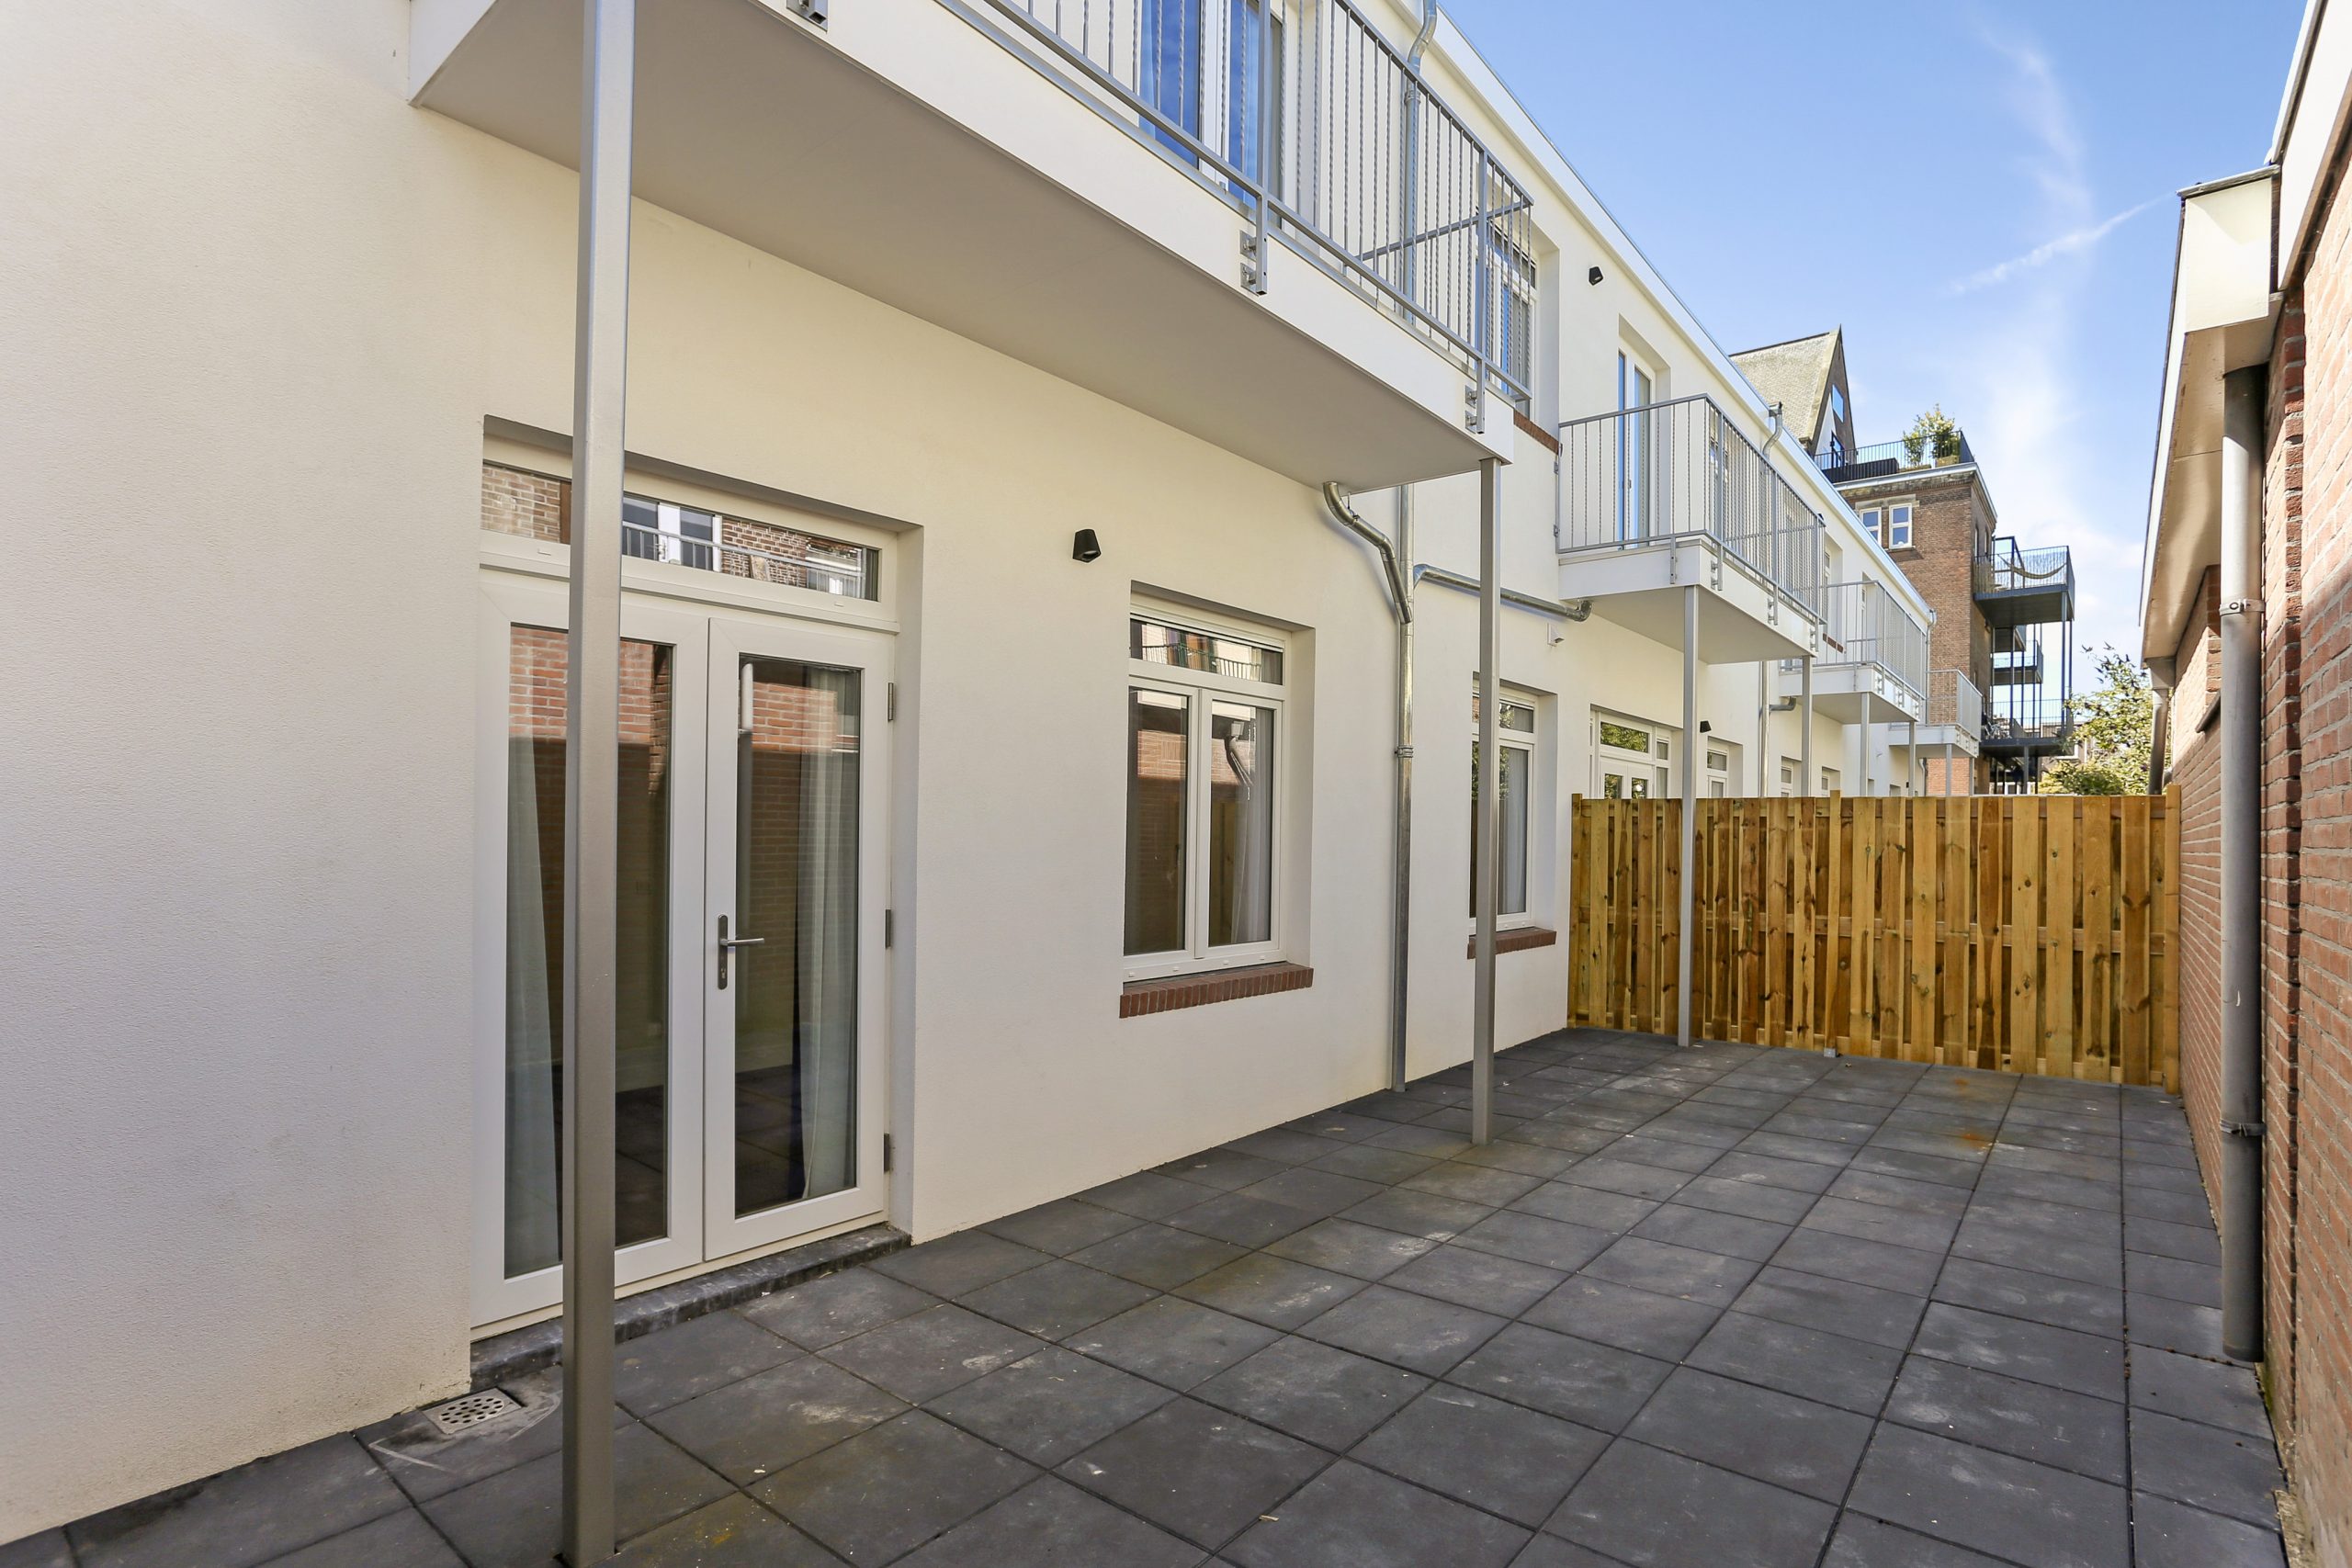 Turn-key Houses realiseert 9 turn-key nieuwbouw appartementen in het centrum van Den Haag.